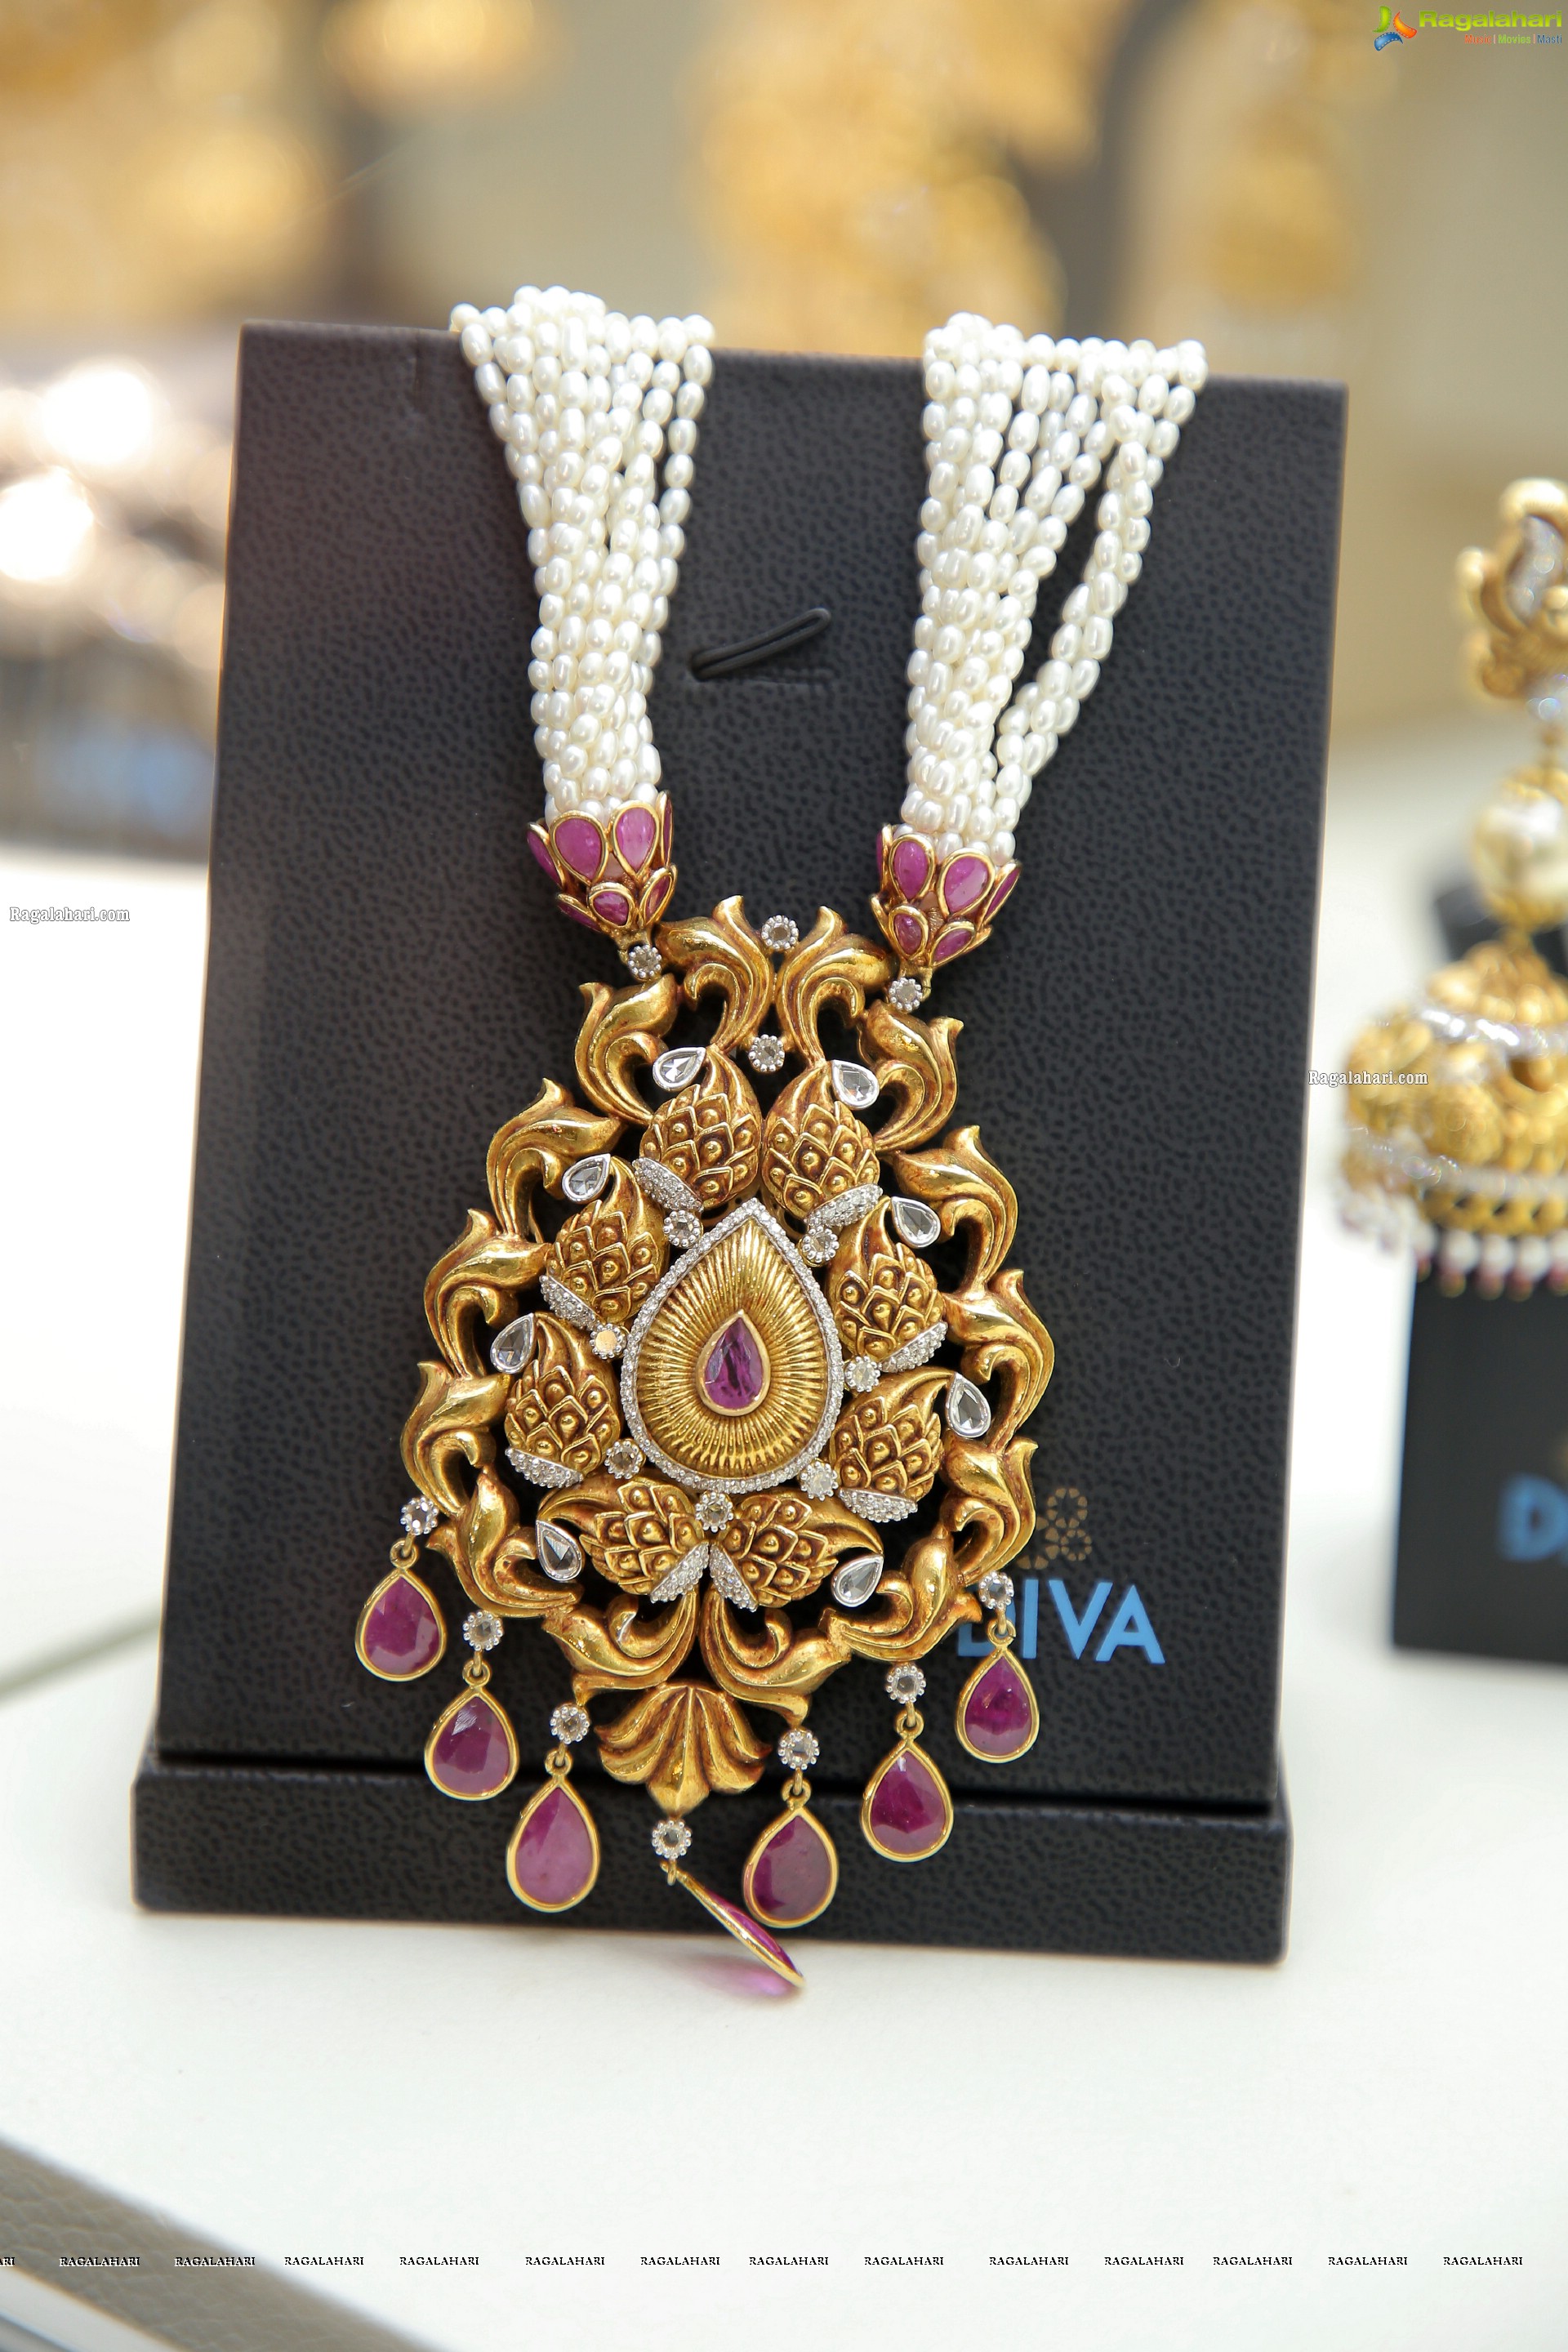 Diva Jewellery Exhibition Begins at Hotel Park Hyatt